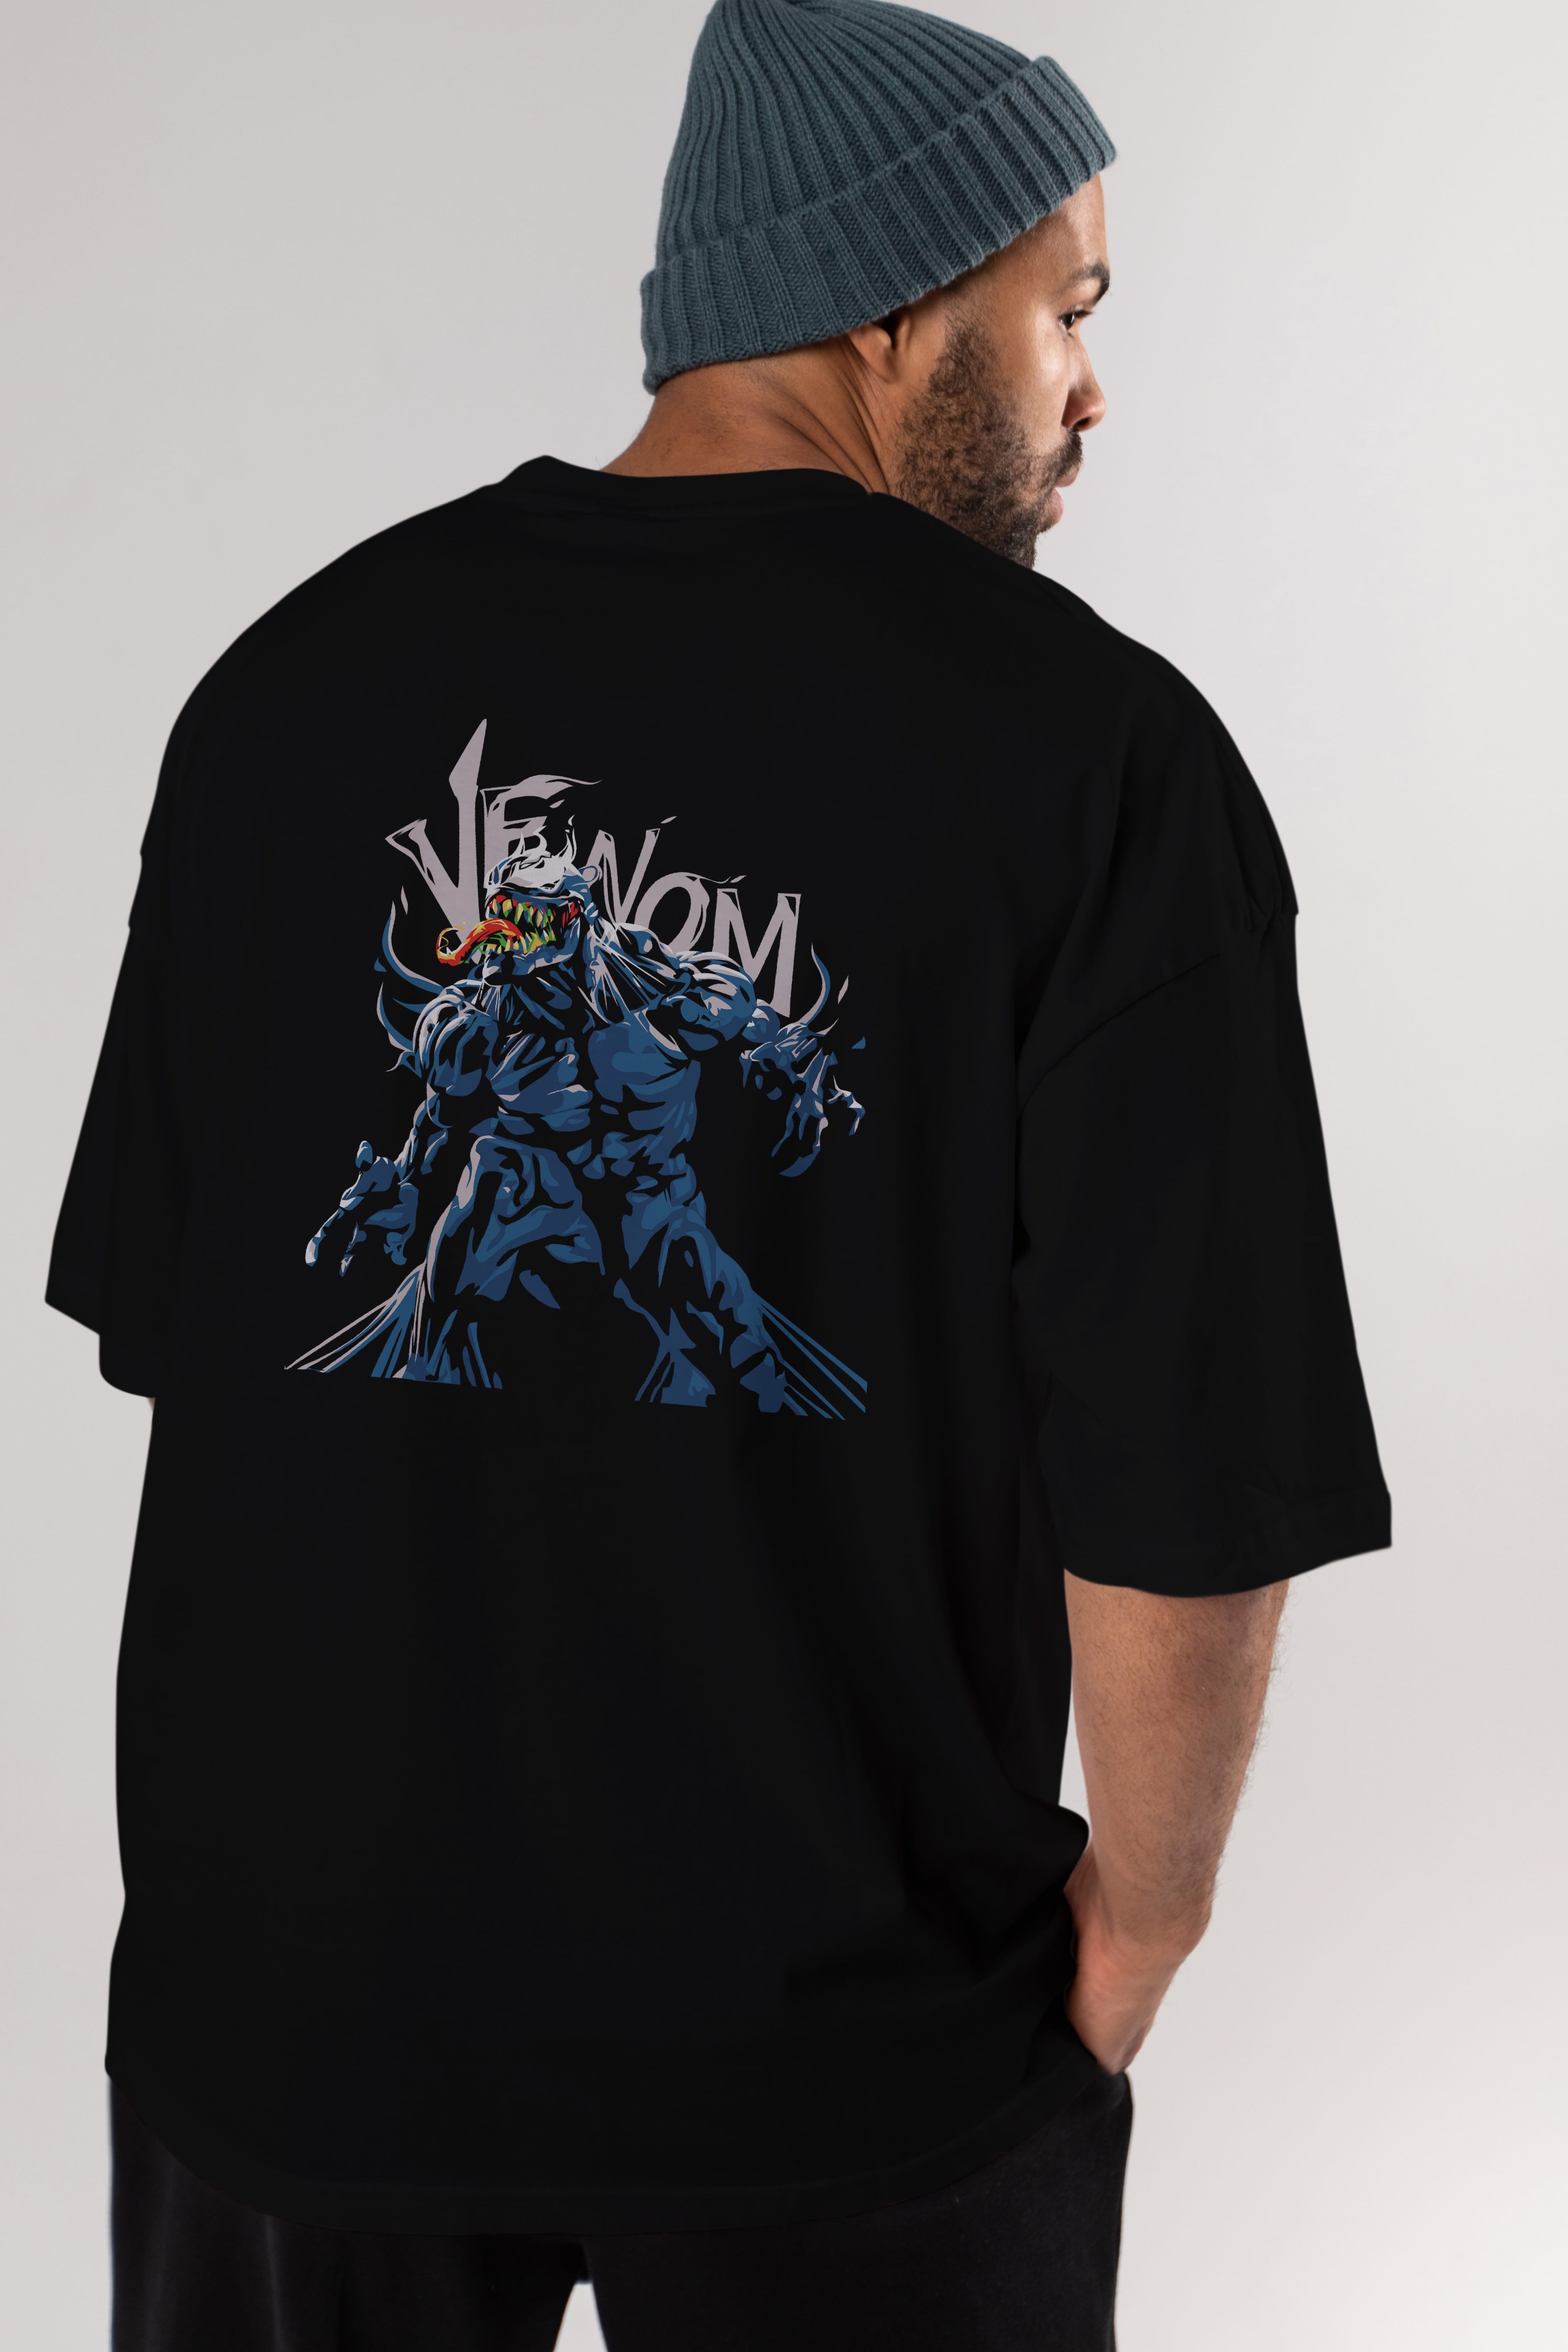 Venom (8) Arka Baskılı Oversize t-shirt Erkek Kadın Unisex %100 Pamuk Bisiklet Yaka tişort